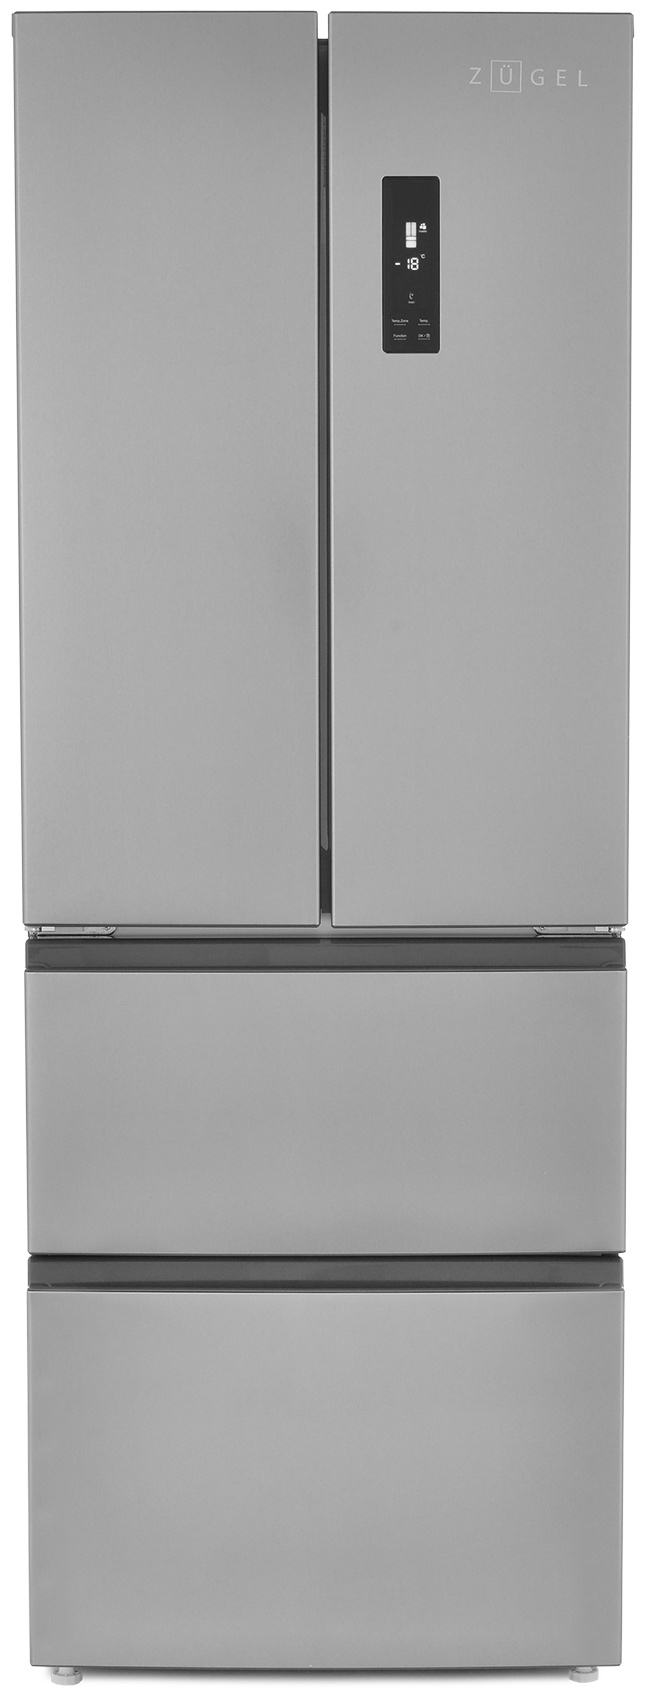 Многокамерный холодильник ZUGEL ZRFD361X, нержавеющая сталь